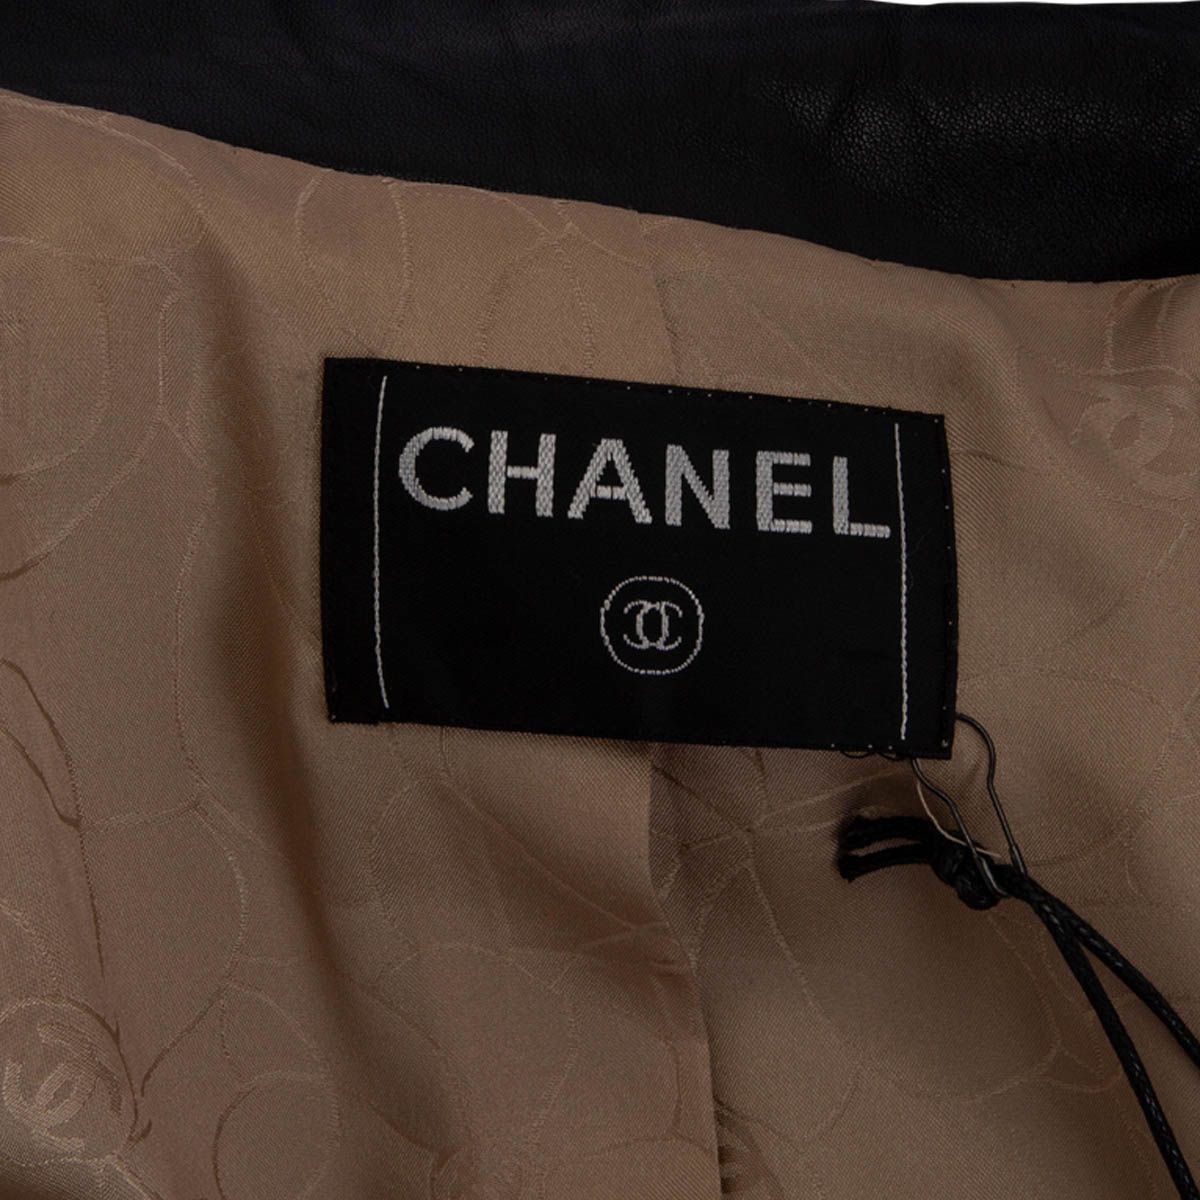 Chanel 2001Camel Hair Leather Trimmed Coat Jacket Beige Black